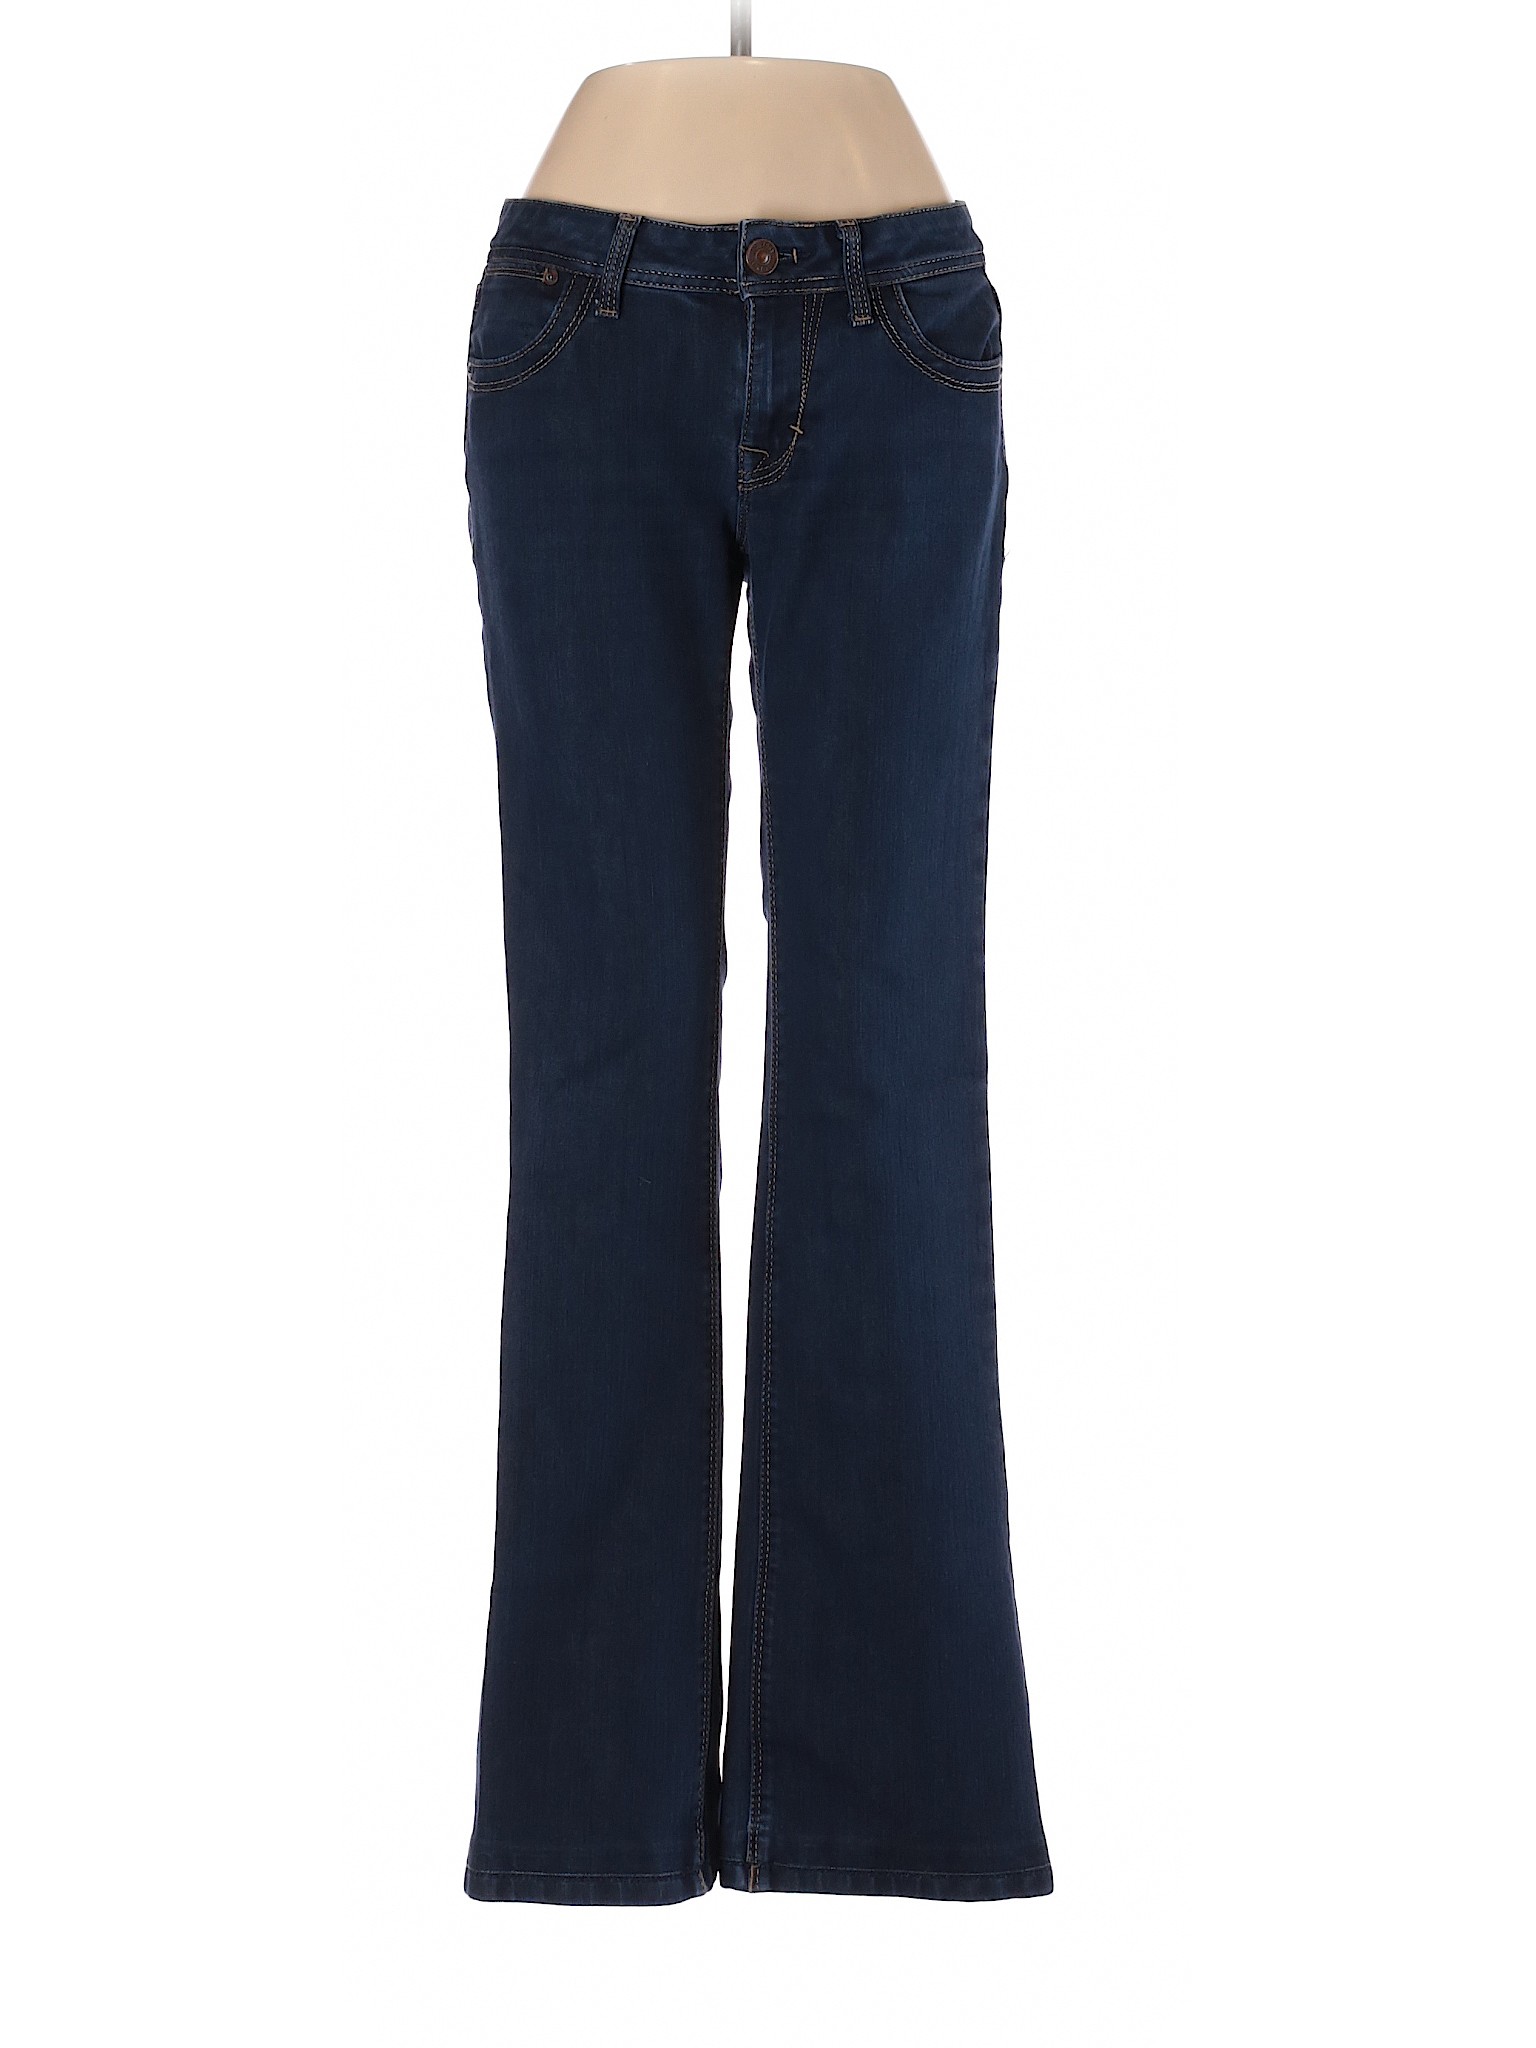 Dl1961 Jeans Size Chart